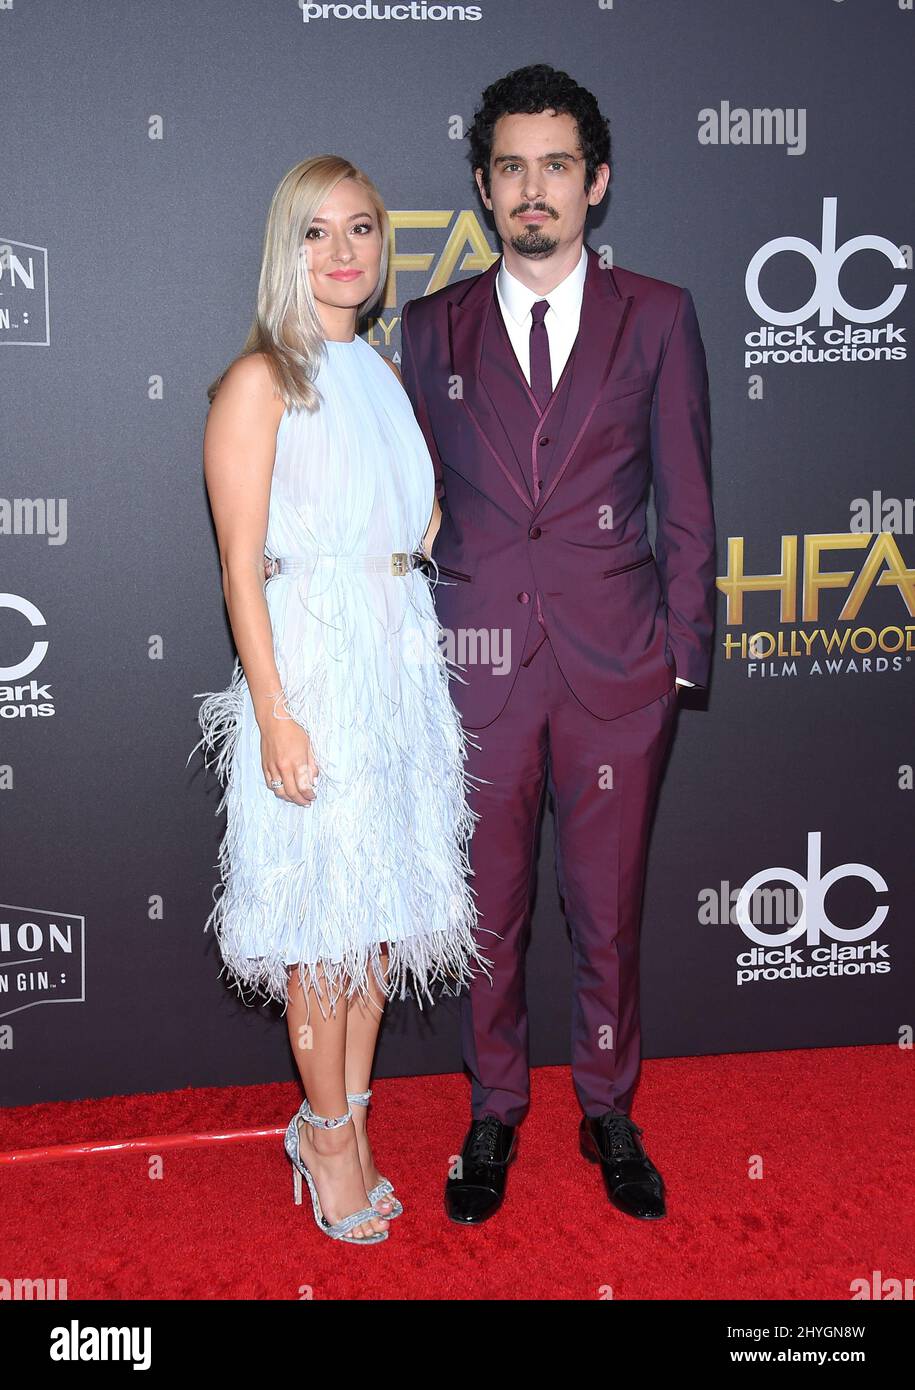 Damien Chazelle et Olivia Hamilton à l'occasion des Hollywood film Awards 22nd qui se sont tenus à l'hôtel Beverly Hilton le 4 novembre 2018 à Beverly Hills, États-Unis Banque D'Images